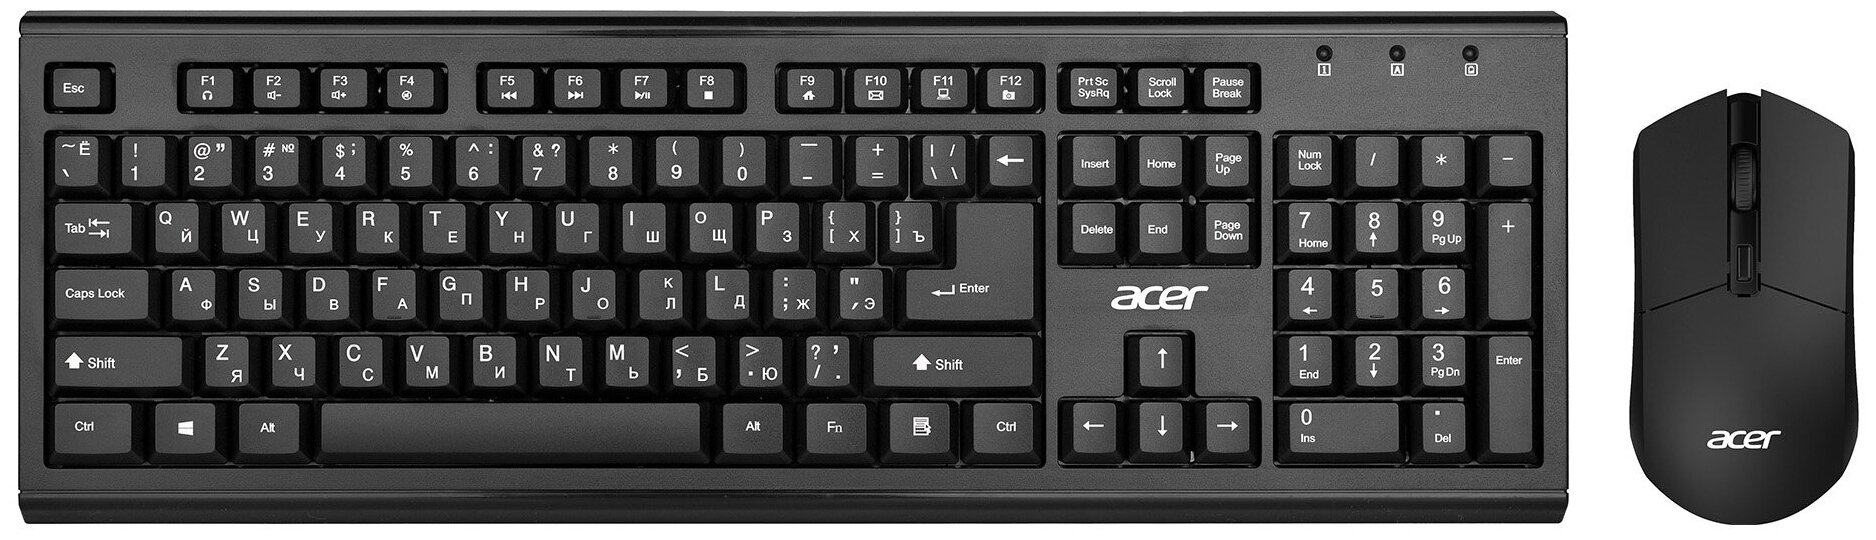 Клавиатура + мышь Acer OKR120 клав: черный мышь: черный USB беспроводная Multimedia